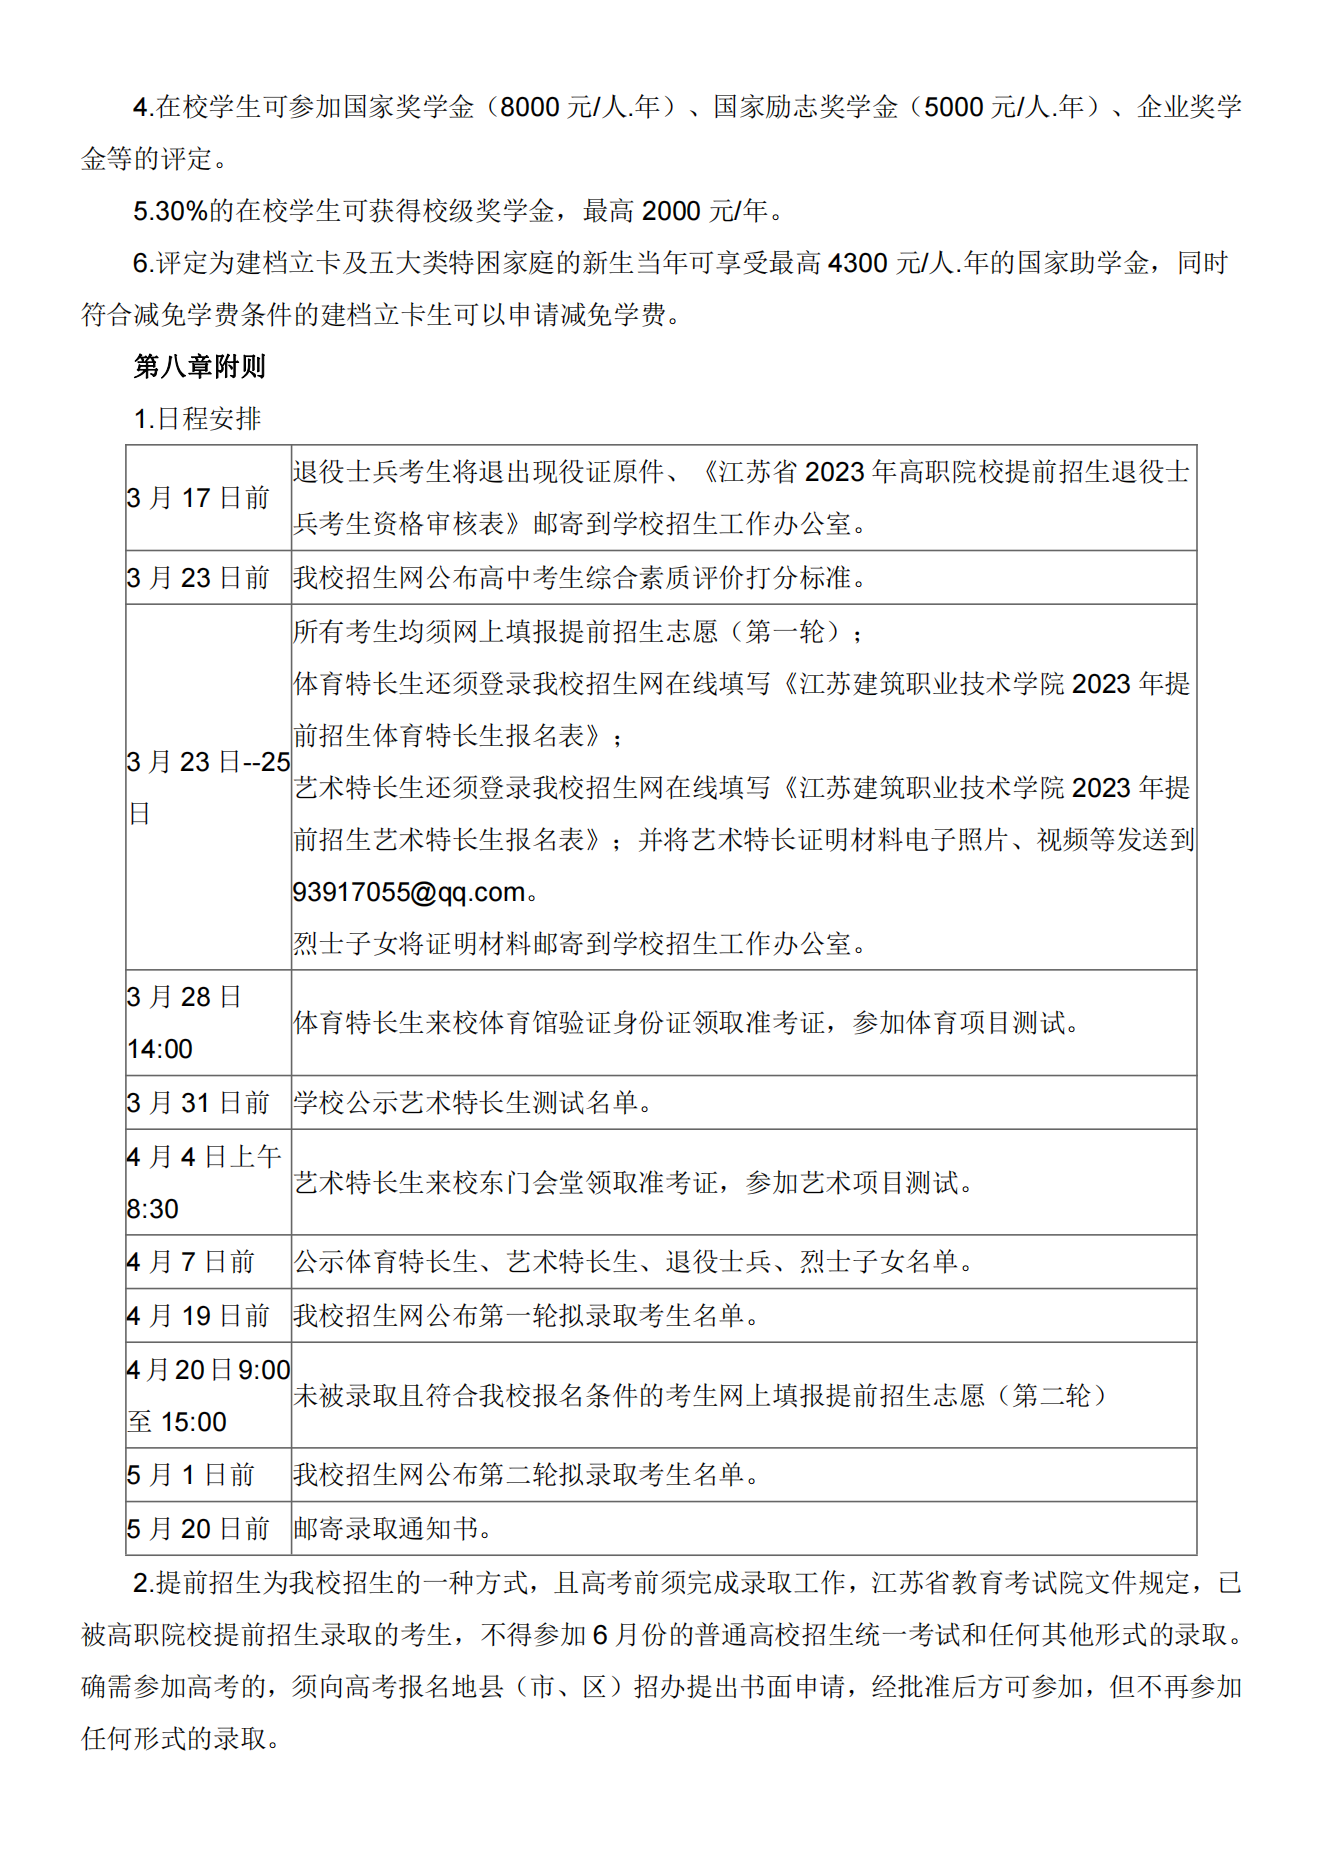 江苏建筑职业技术学院2023年提前招生章程